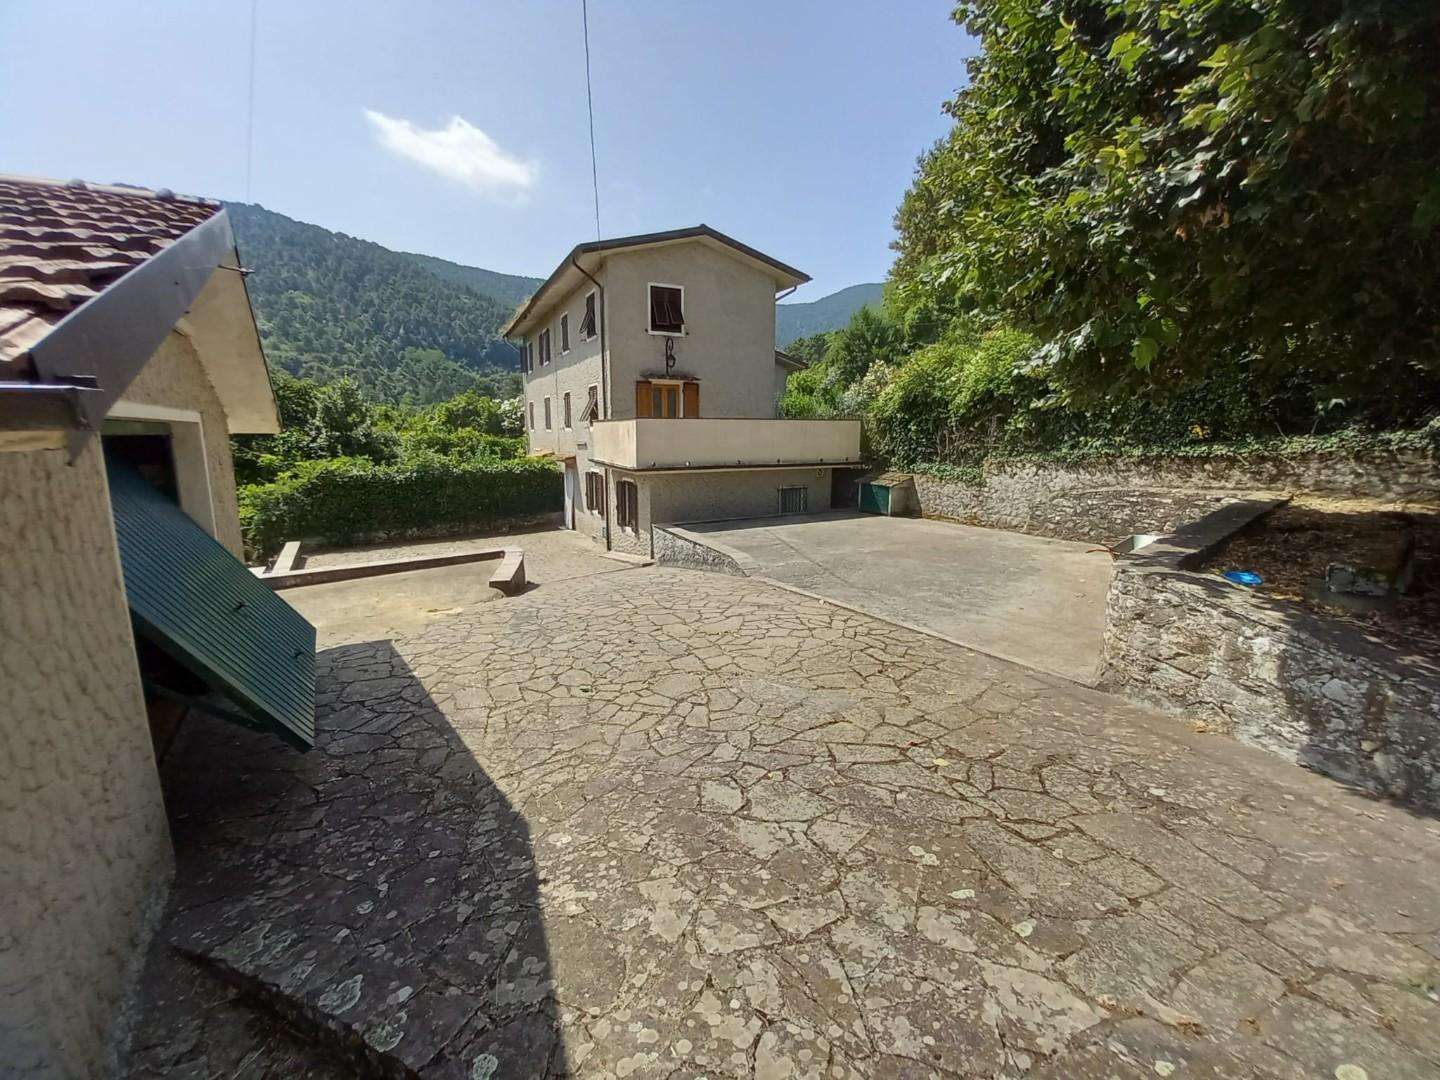 Casa Bi - Trifamiliare in Vendita a Capannori Colle di Compito,